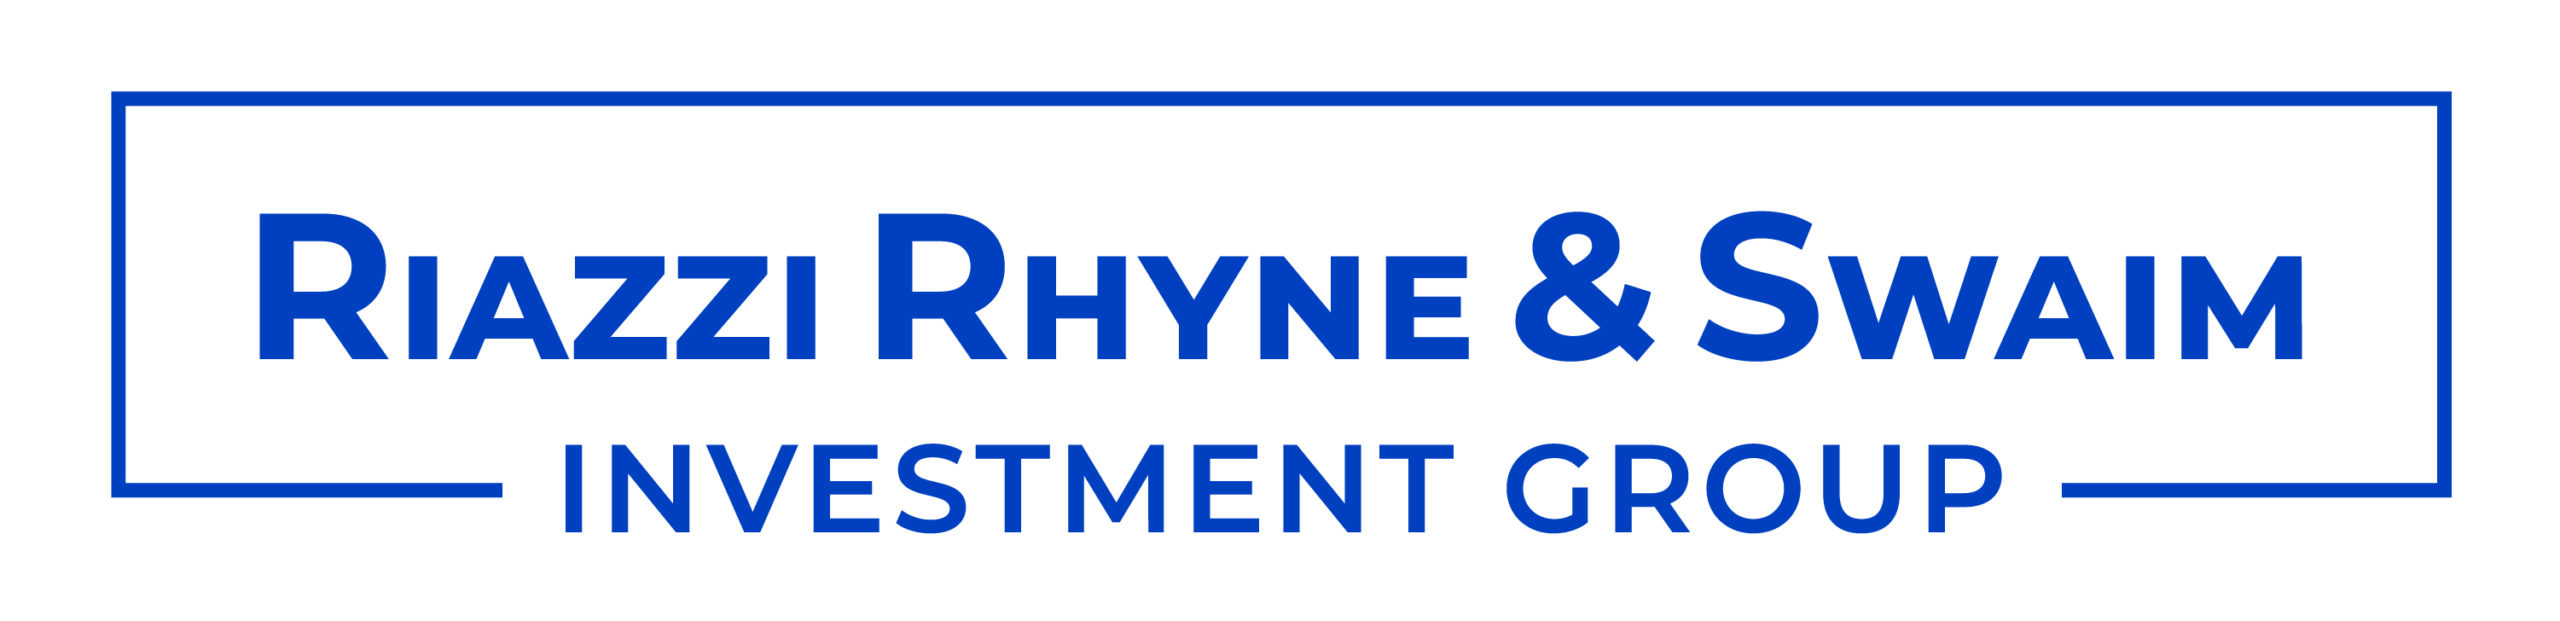 Riazzi Rhyne & Swaim logo